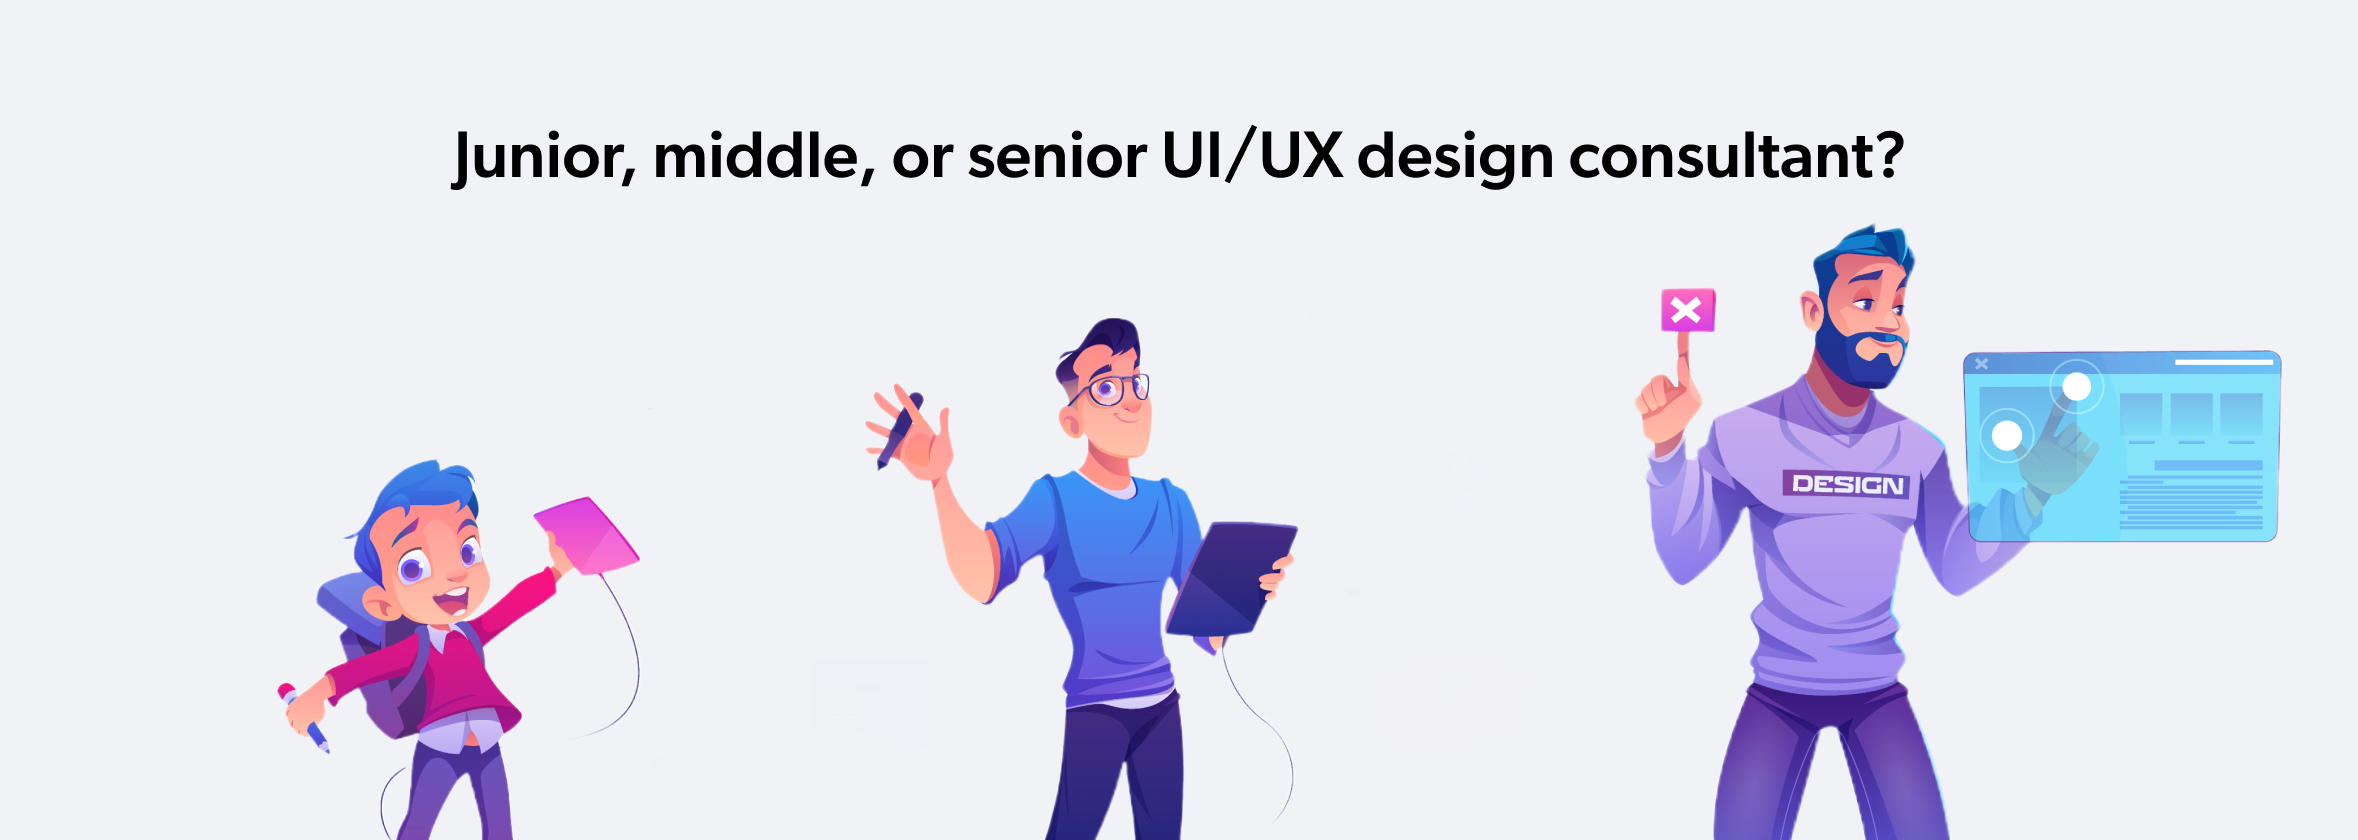 UI/UX design consultants